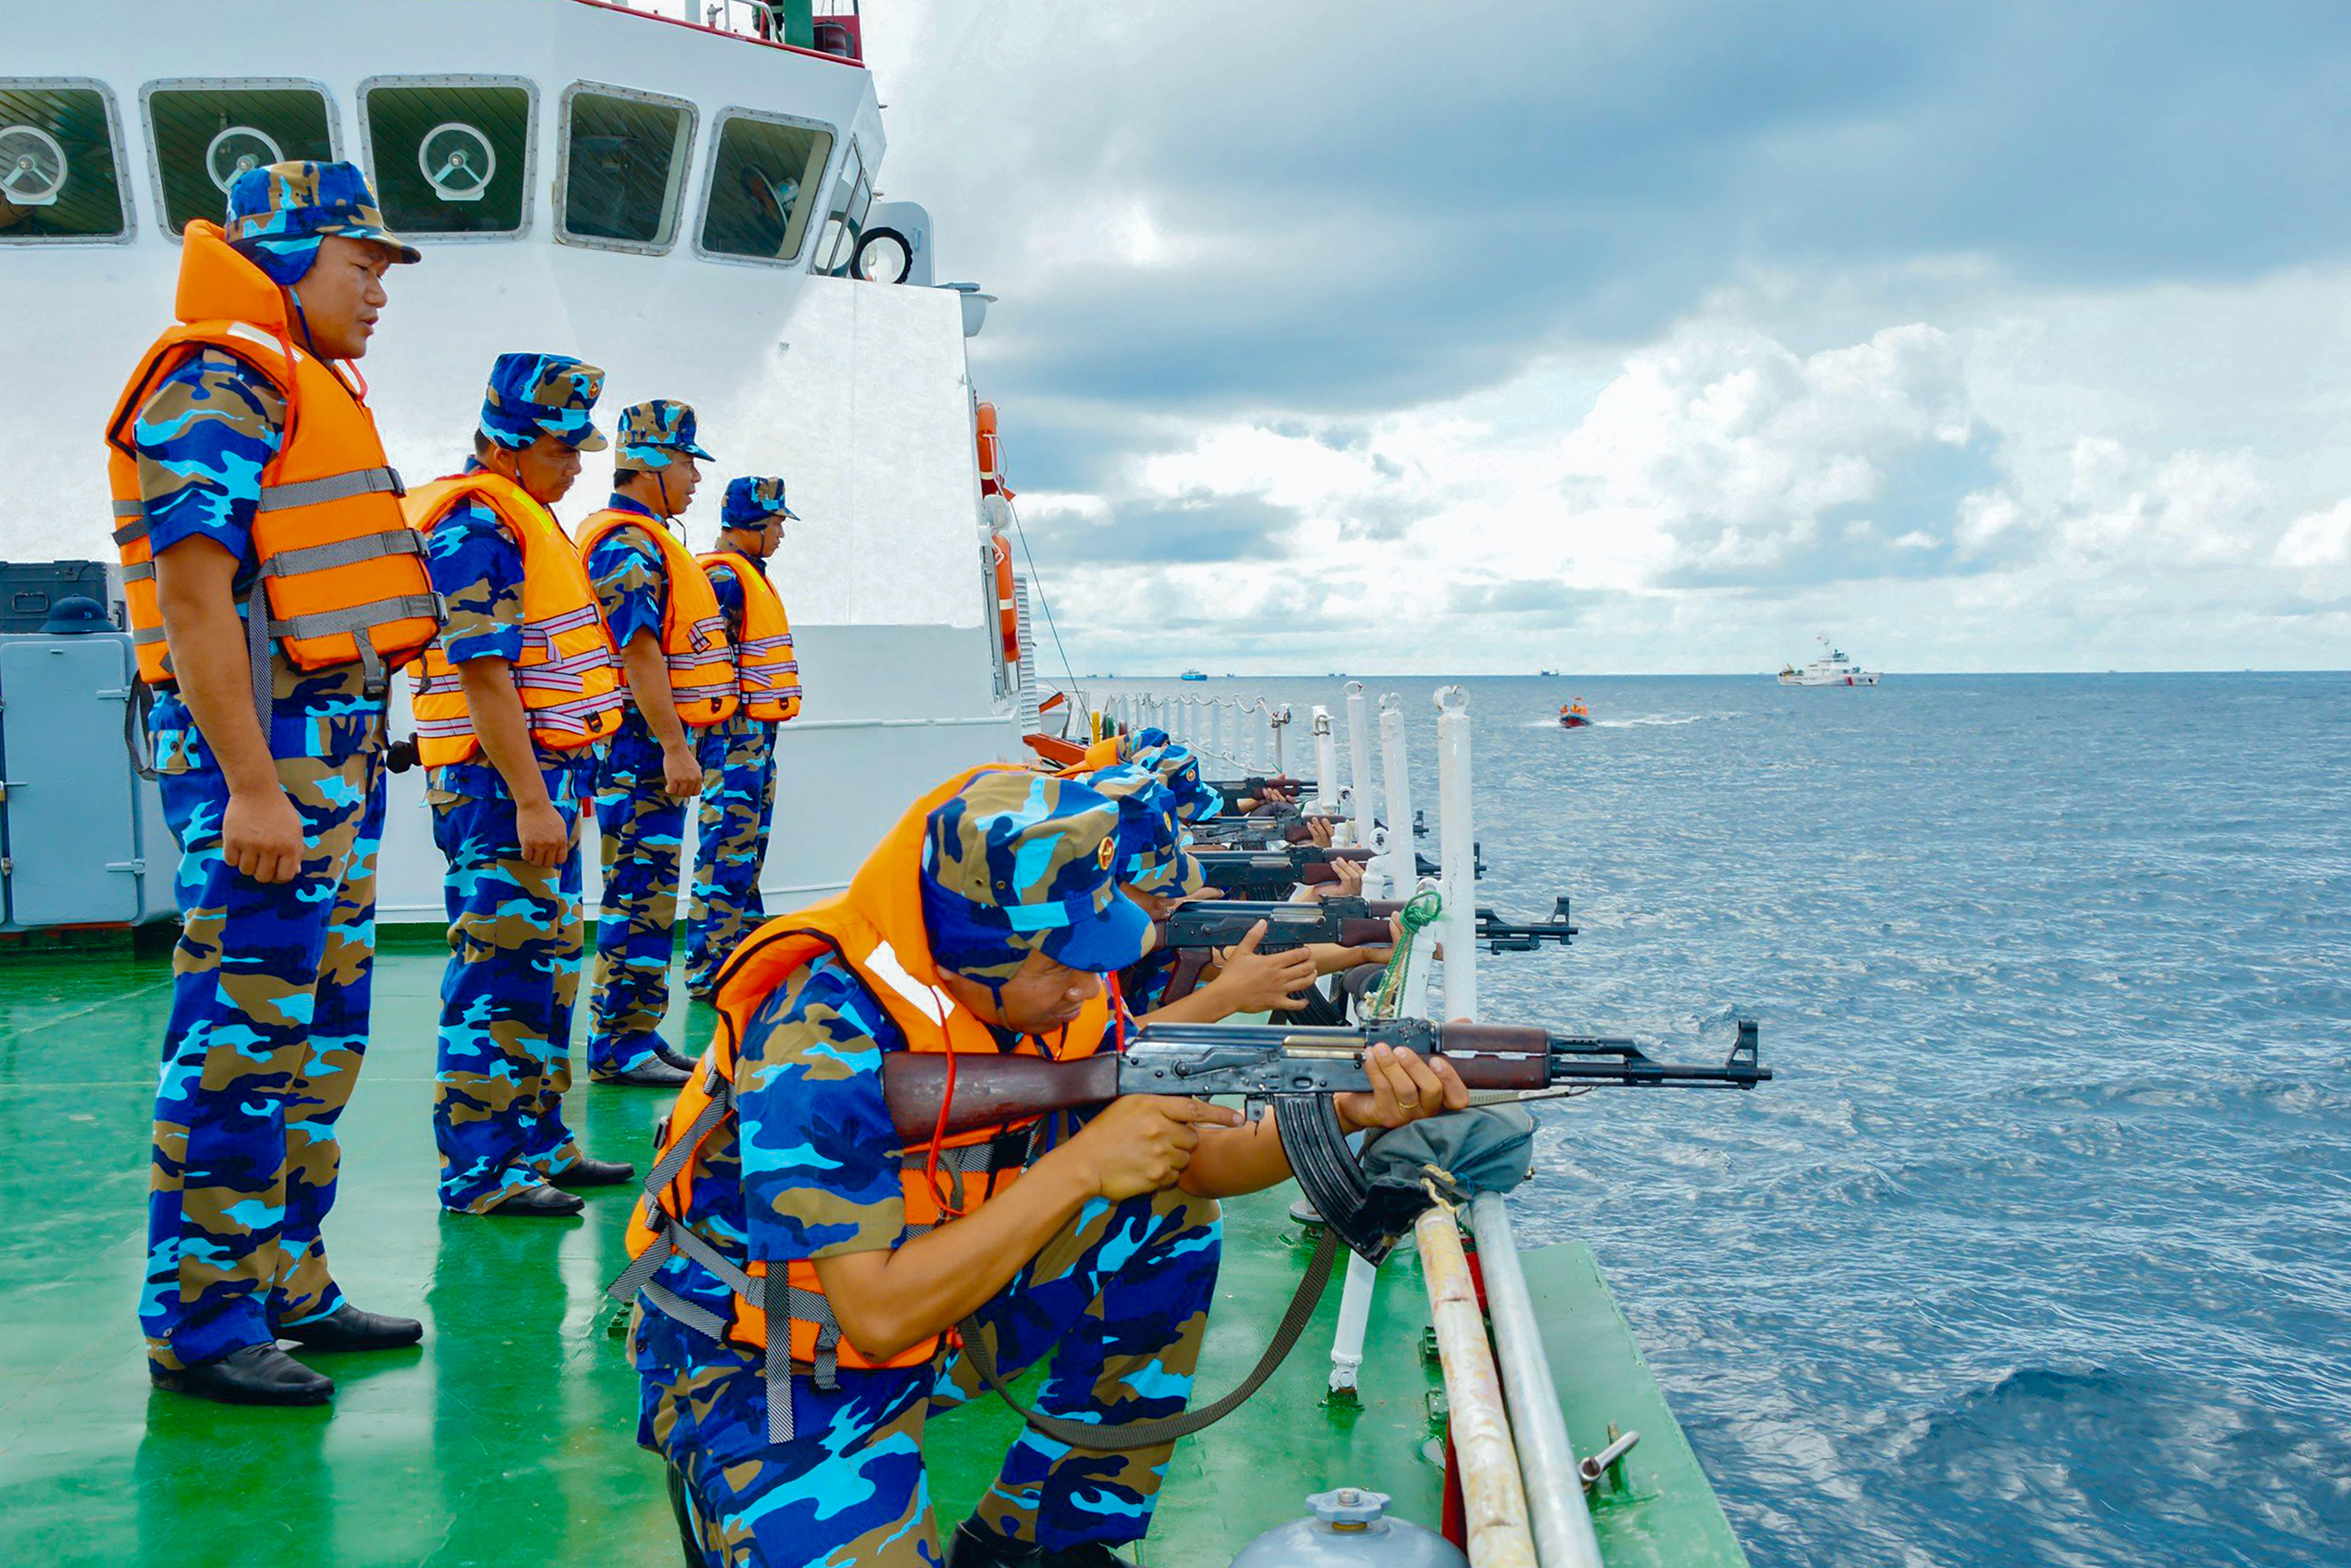 BTL Vùng CSB3 tổ chức huấn luyện bắn đạn thật trên biển nhằm nâng cao trình độ kỹ chiến thuật, trình độ chỉ huy, hiệp đồng cho biên đội và từng cán bộ, chiến sĩ trên tàu.